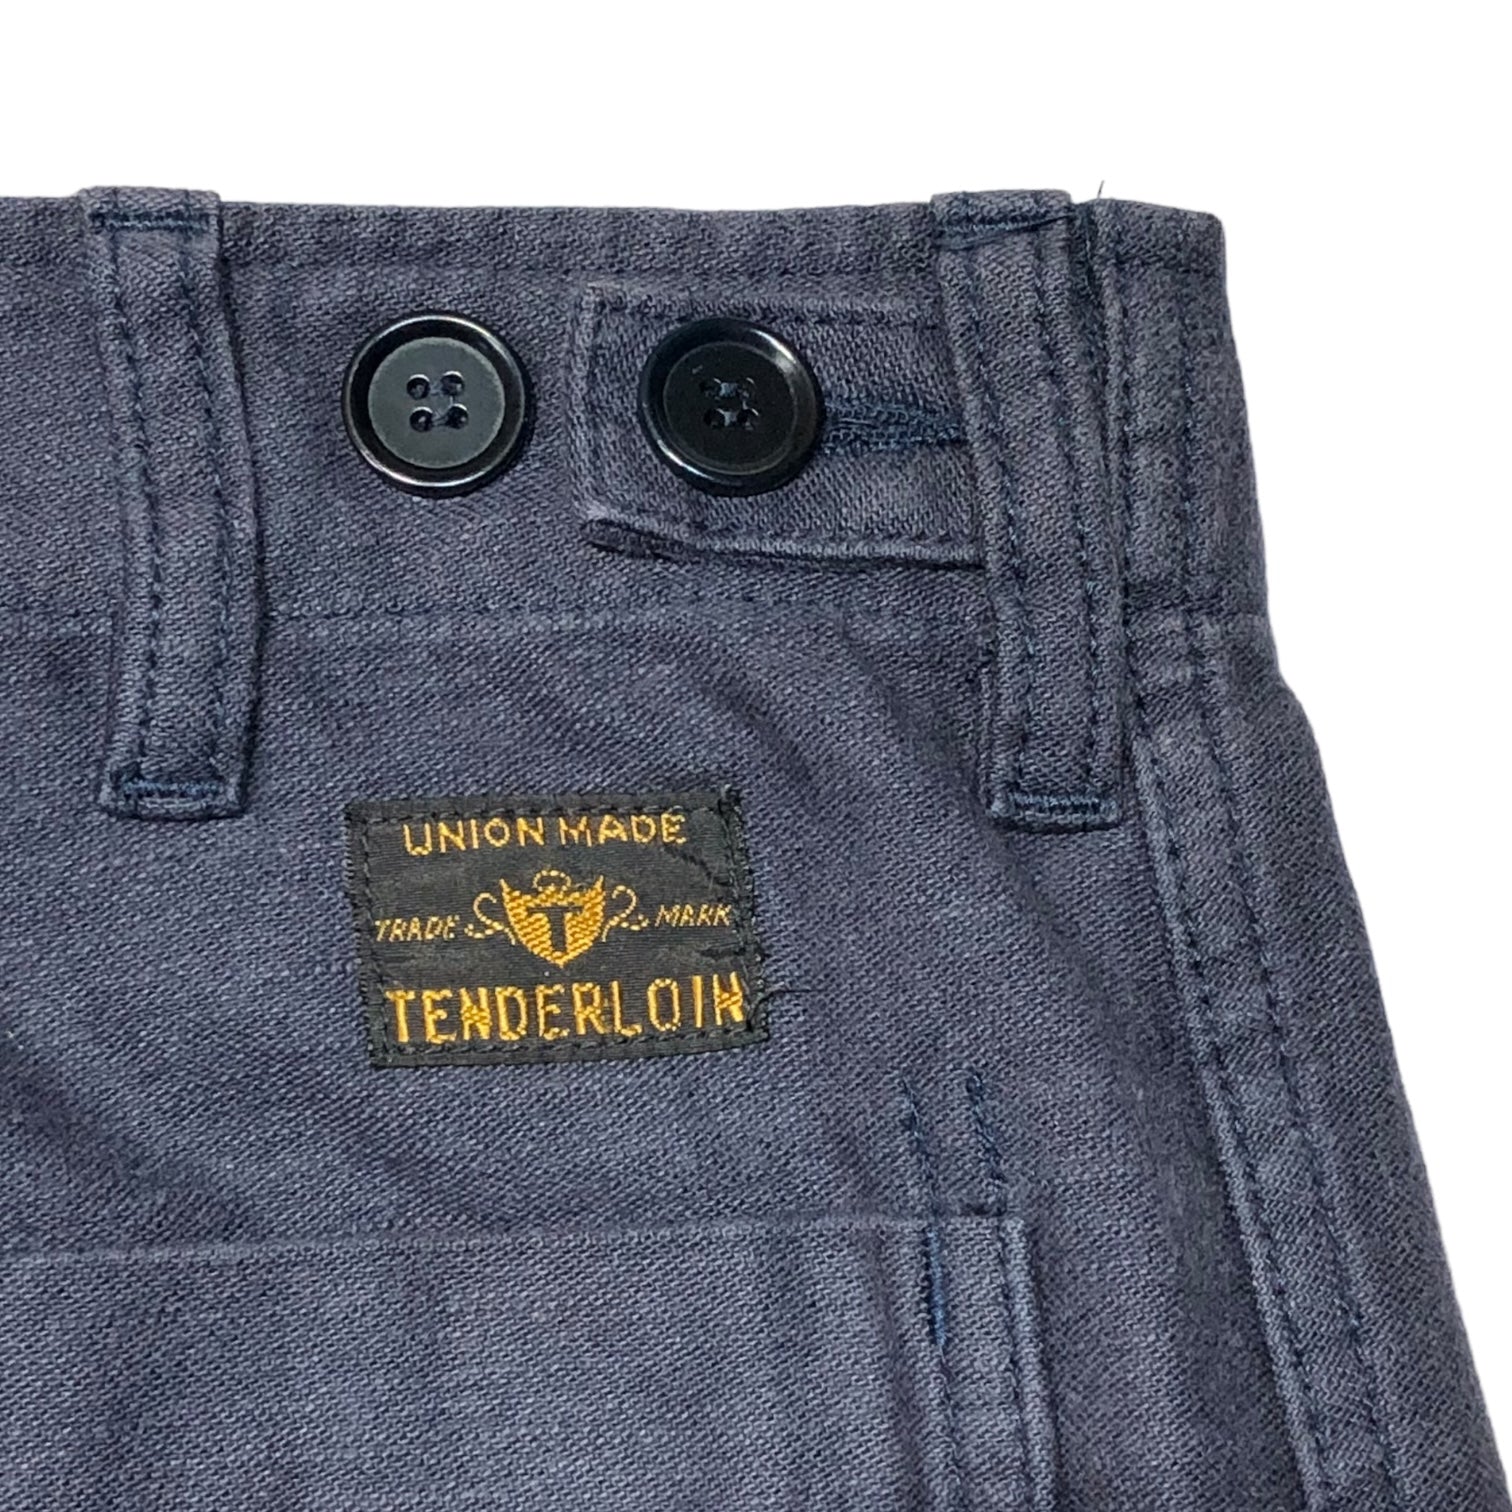 TENDERLOIN(テンダーロイン) military baker pants ミリタリー ベイカー パンツ S ネイビー